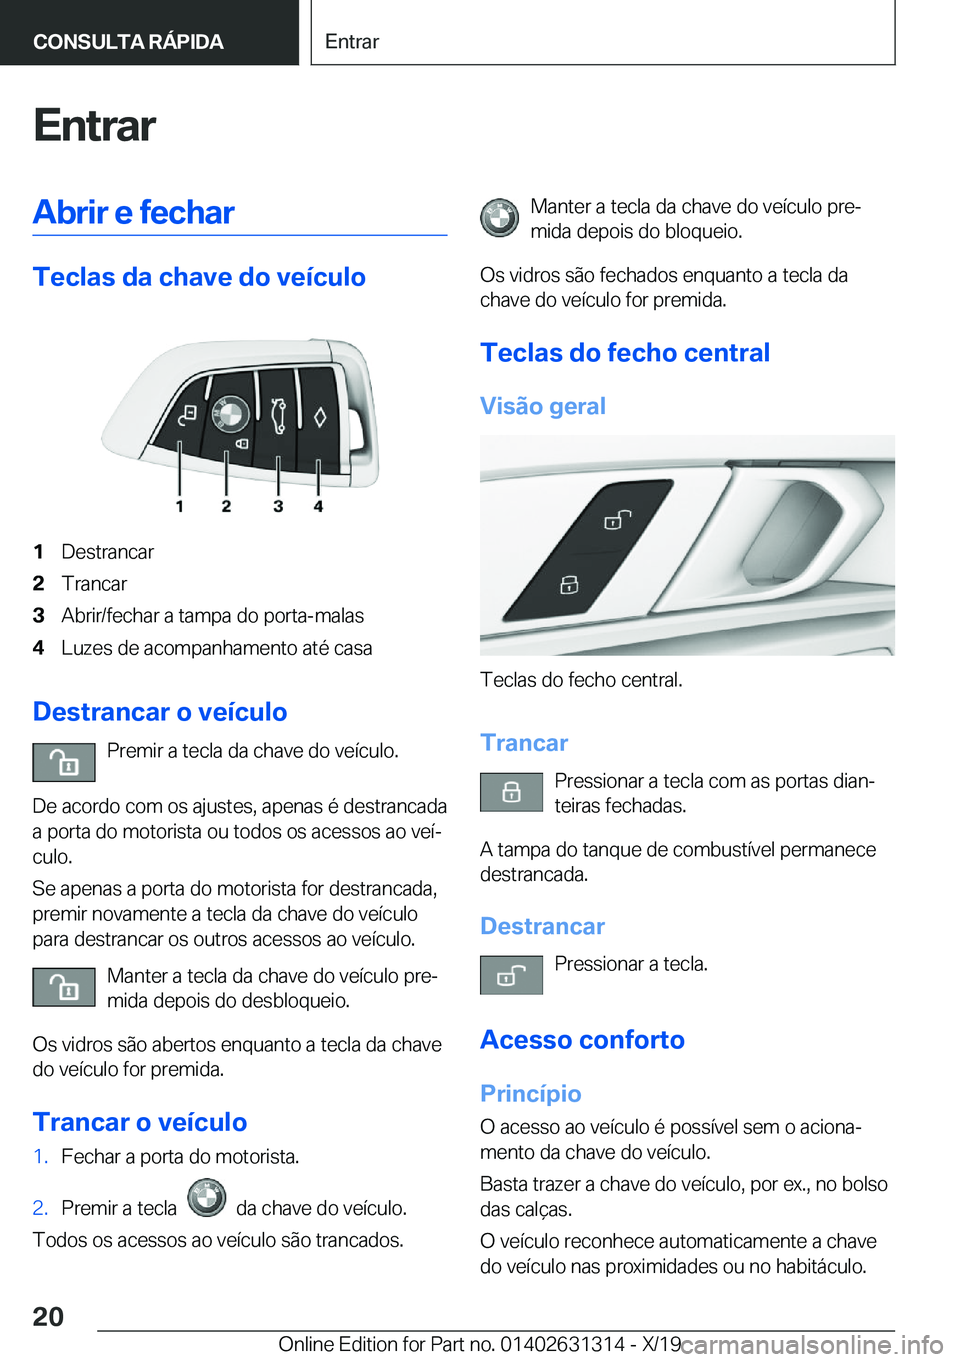 BMW M8 2020  Manual do condutor (in Portuguese) �E�n�t�r�a�r�A�b�r�i�r��e��f�e�c�h�a�r
�T�e�c�l�a�s��d�a��c�h�a�v�e��d�o��v�e�